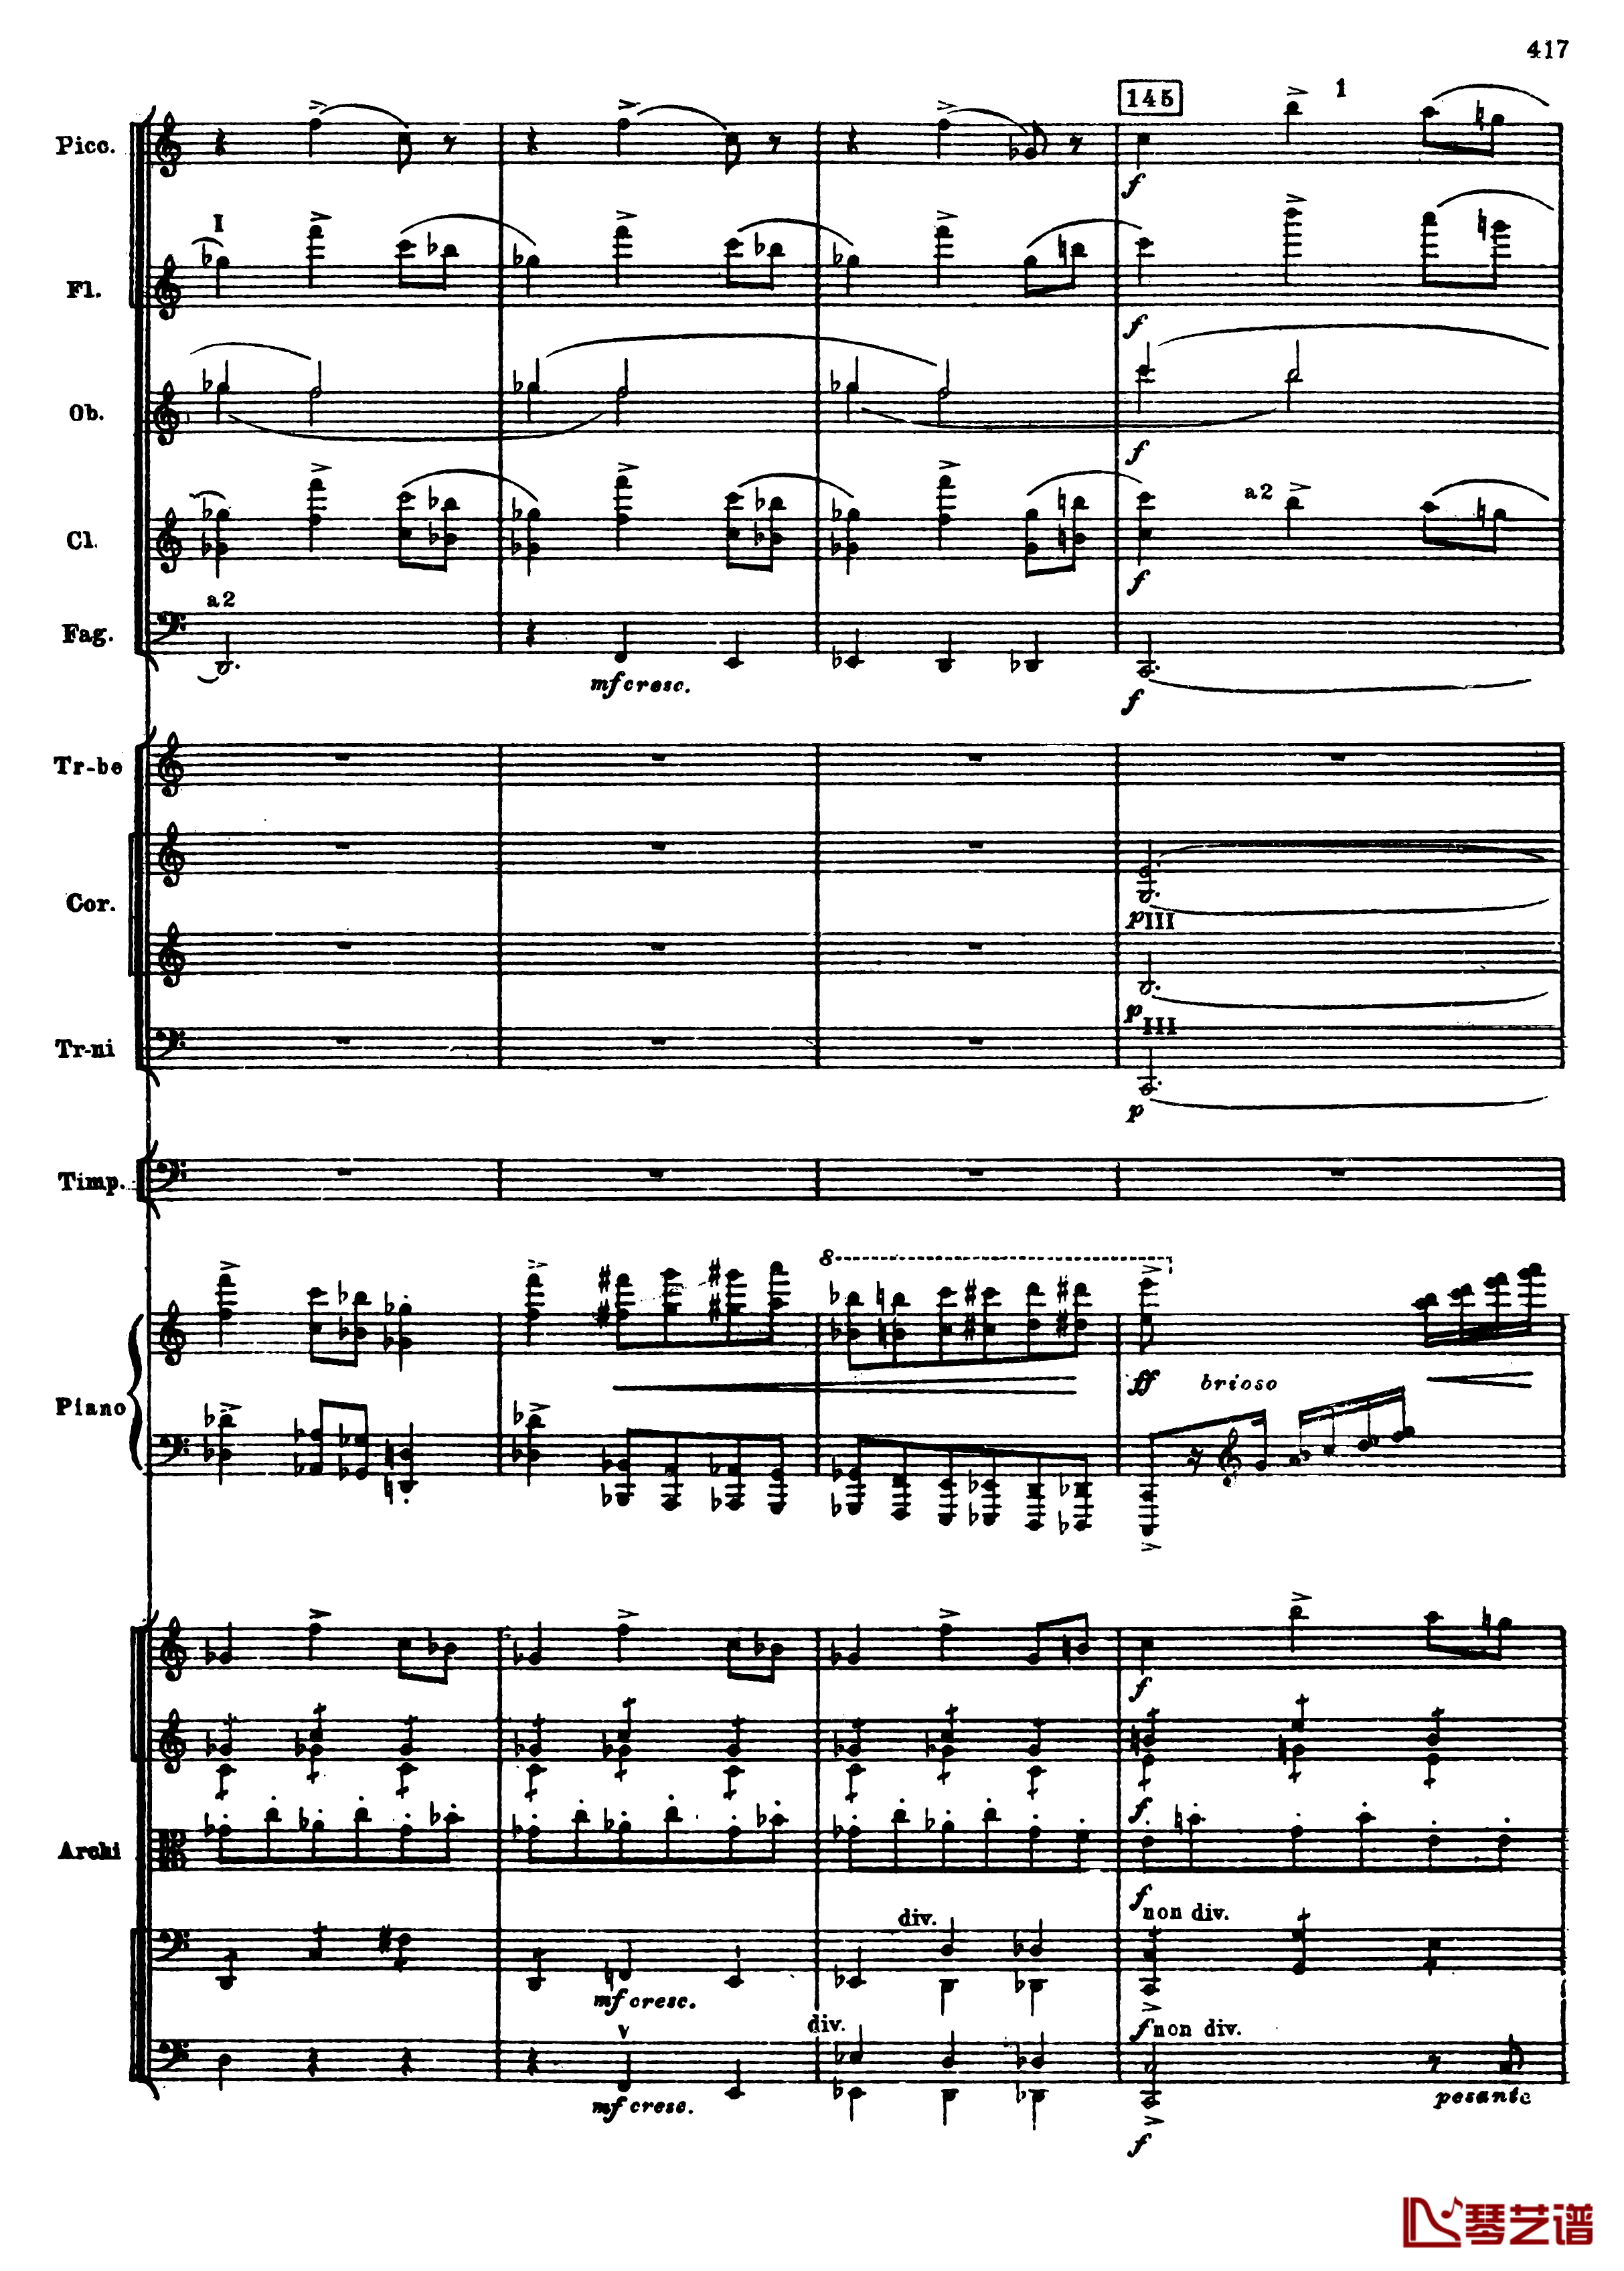 普罗科菲耶夫第三钢琴协奏曲钢琴谱-总谱-普罗科非耶夫149